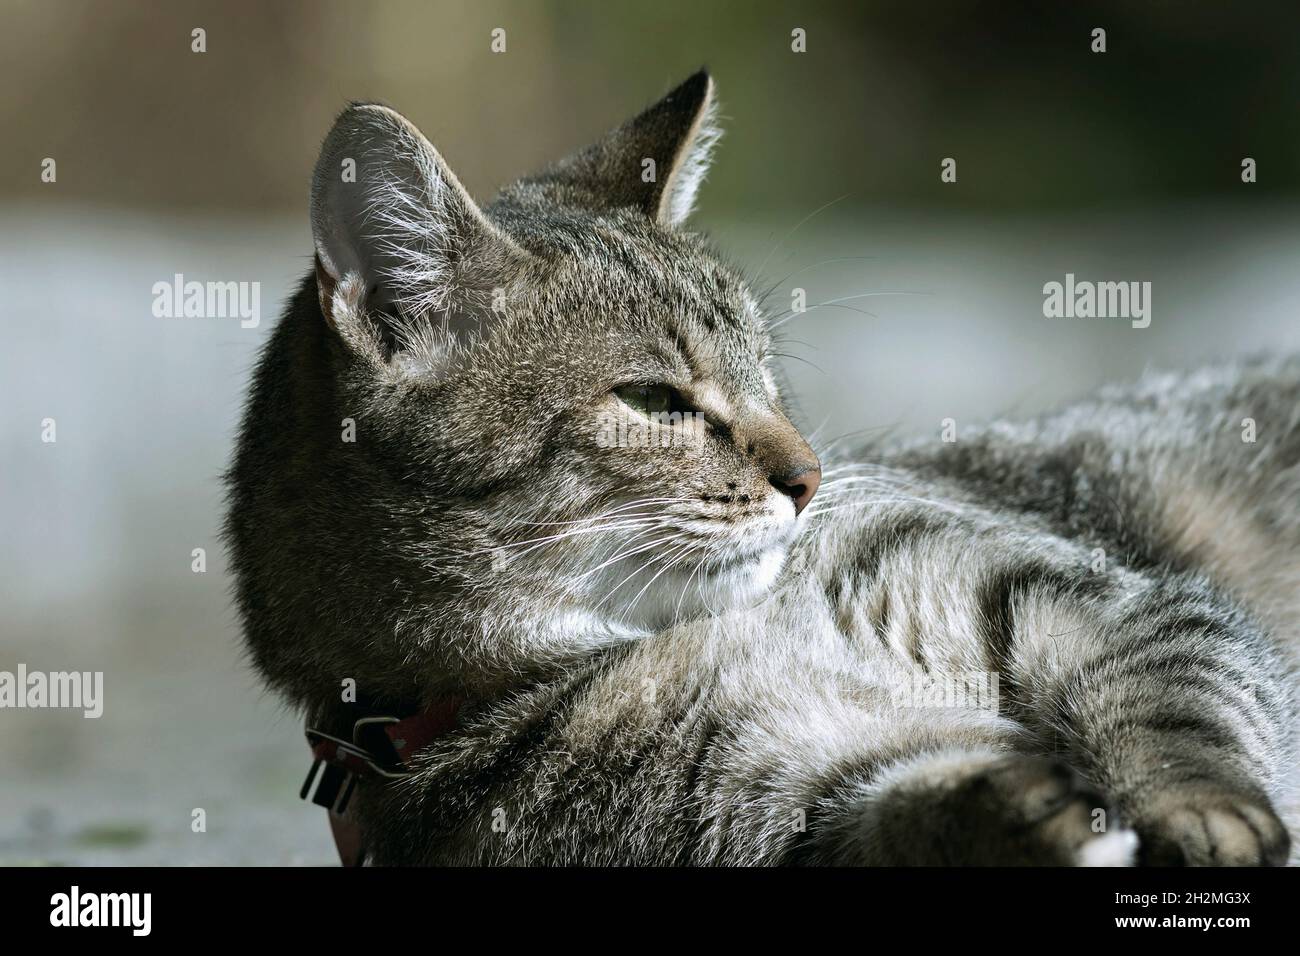 Ferme-chat domestique nu ( Felis catus ) montrant les caractéristiques du chat sauvage Banque D'Images